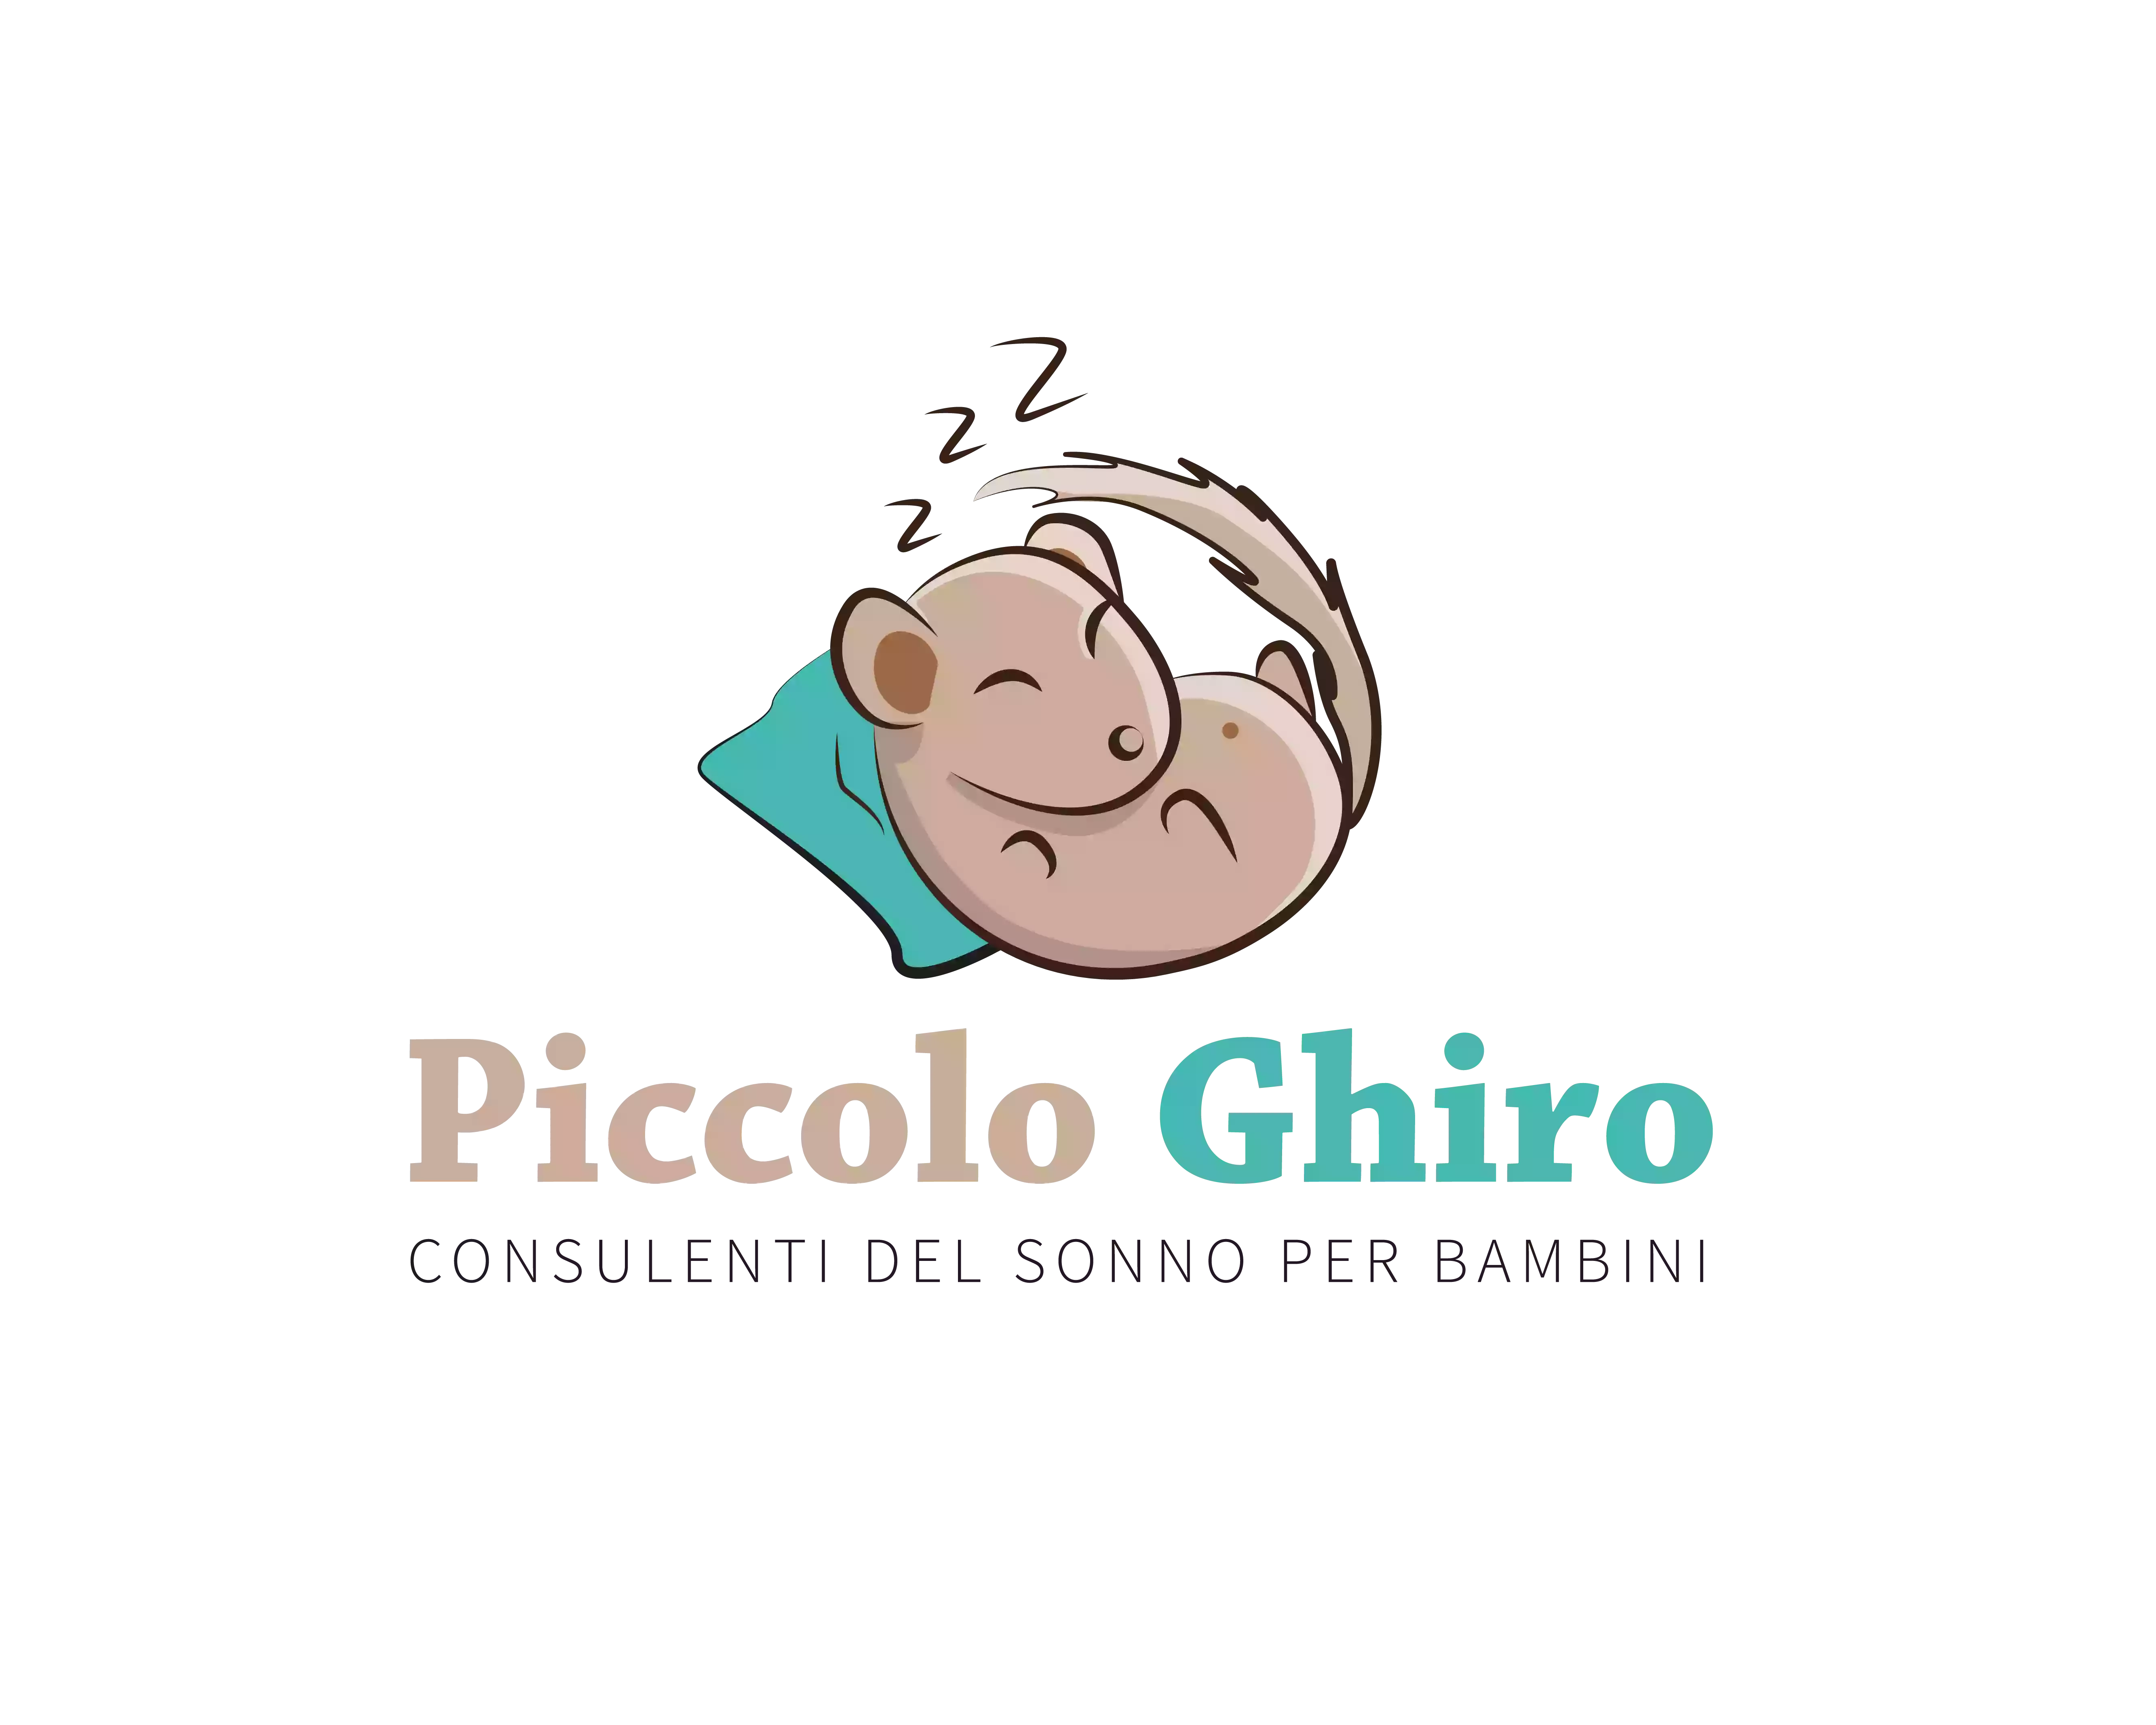 Piccolo Ghiro - Consulenti del sonno per bambini